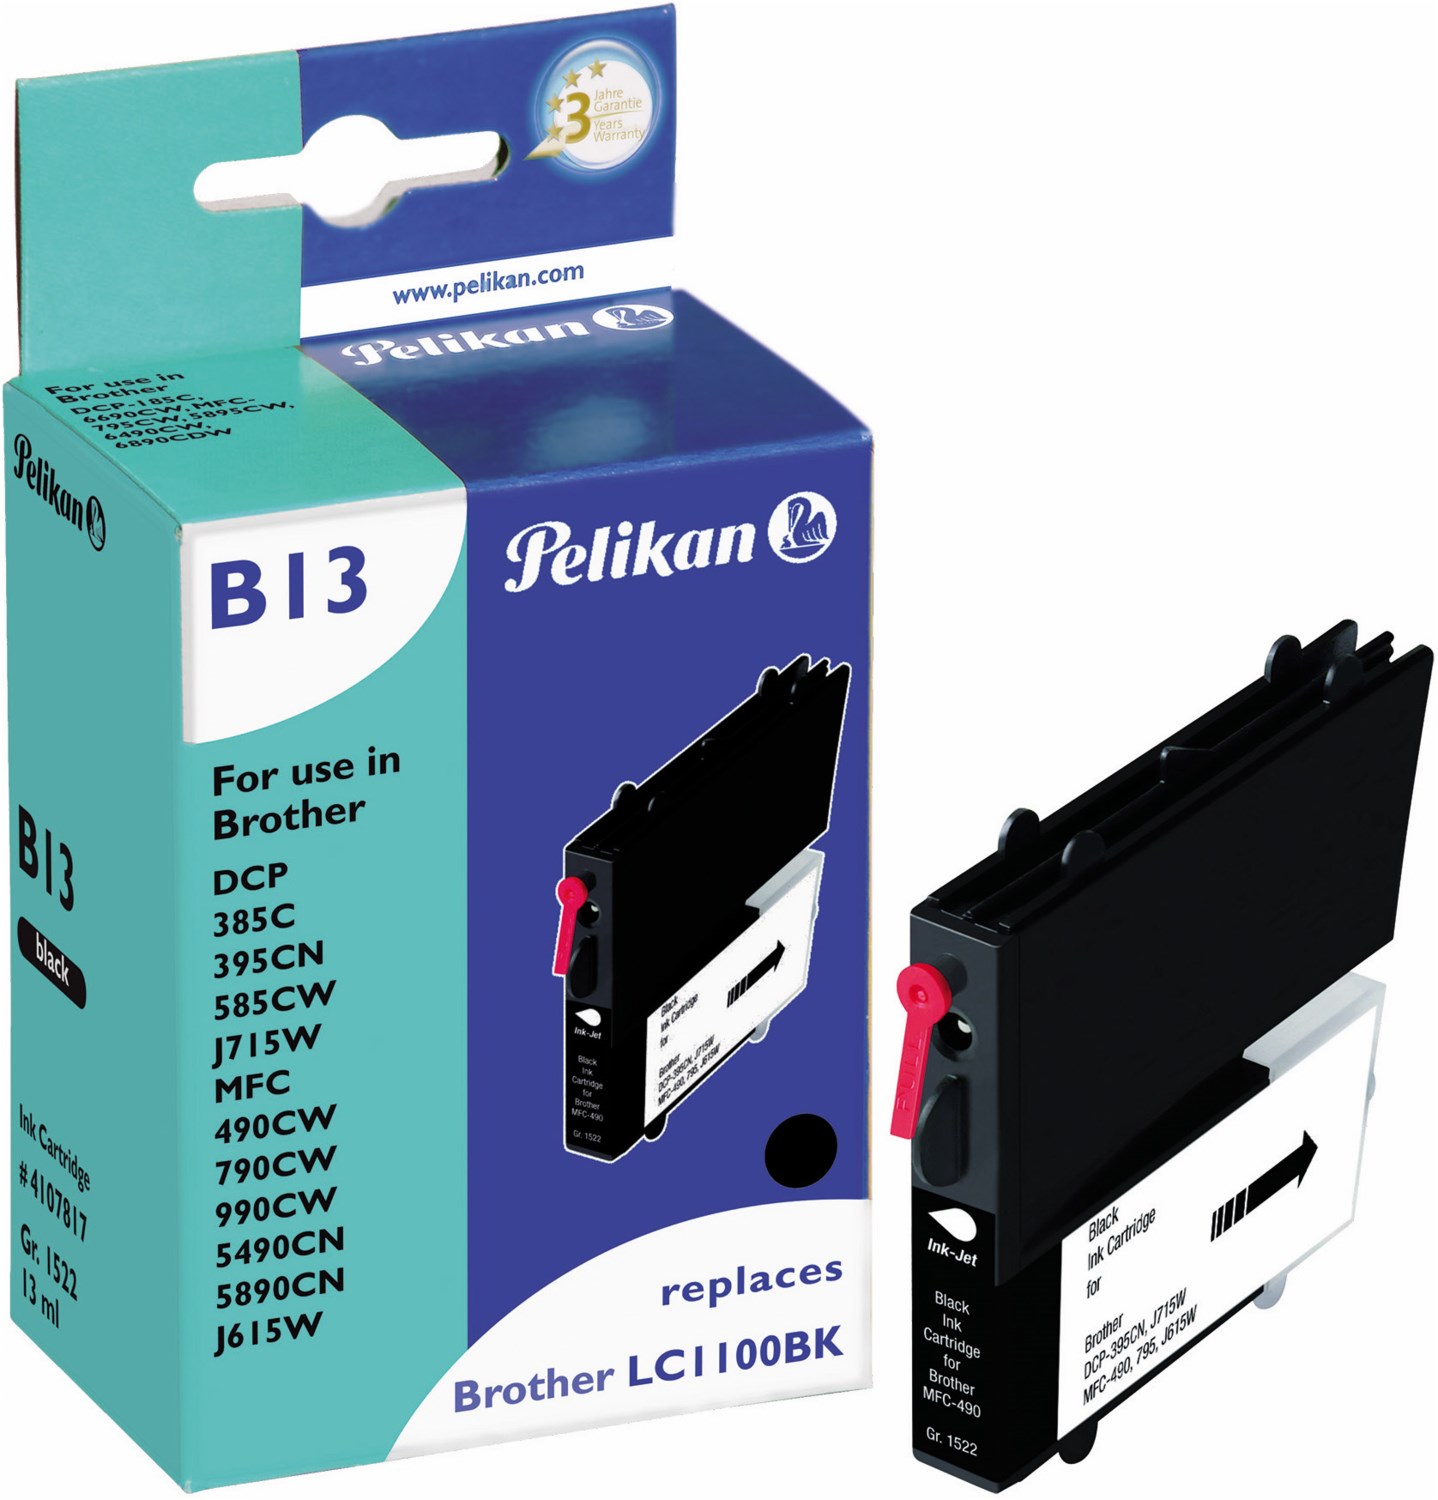 B13 Tintenpatrone ersetzt Brother LC1100BK schwarz von Pelikan